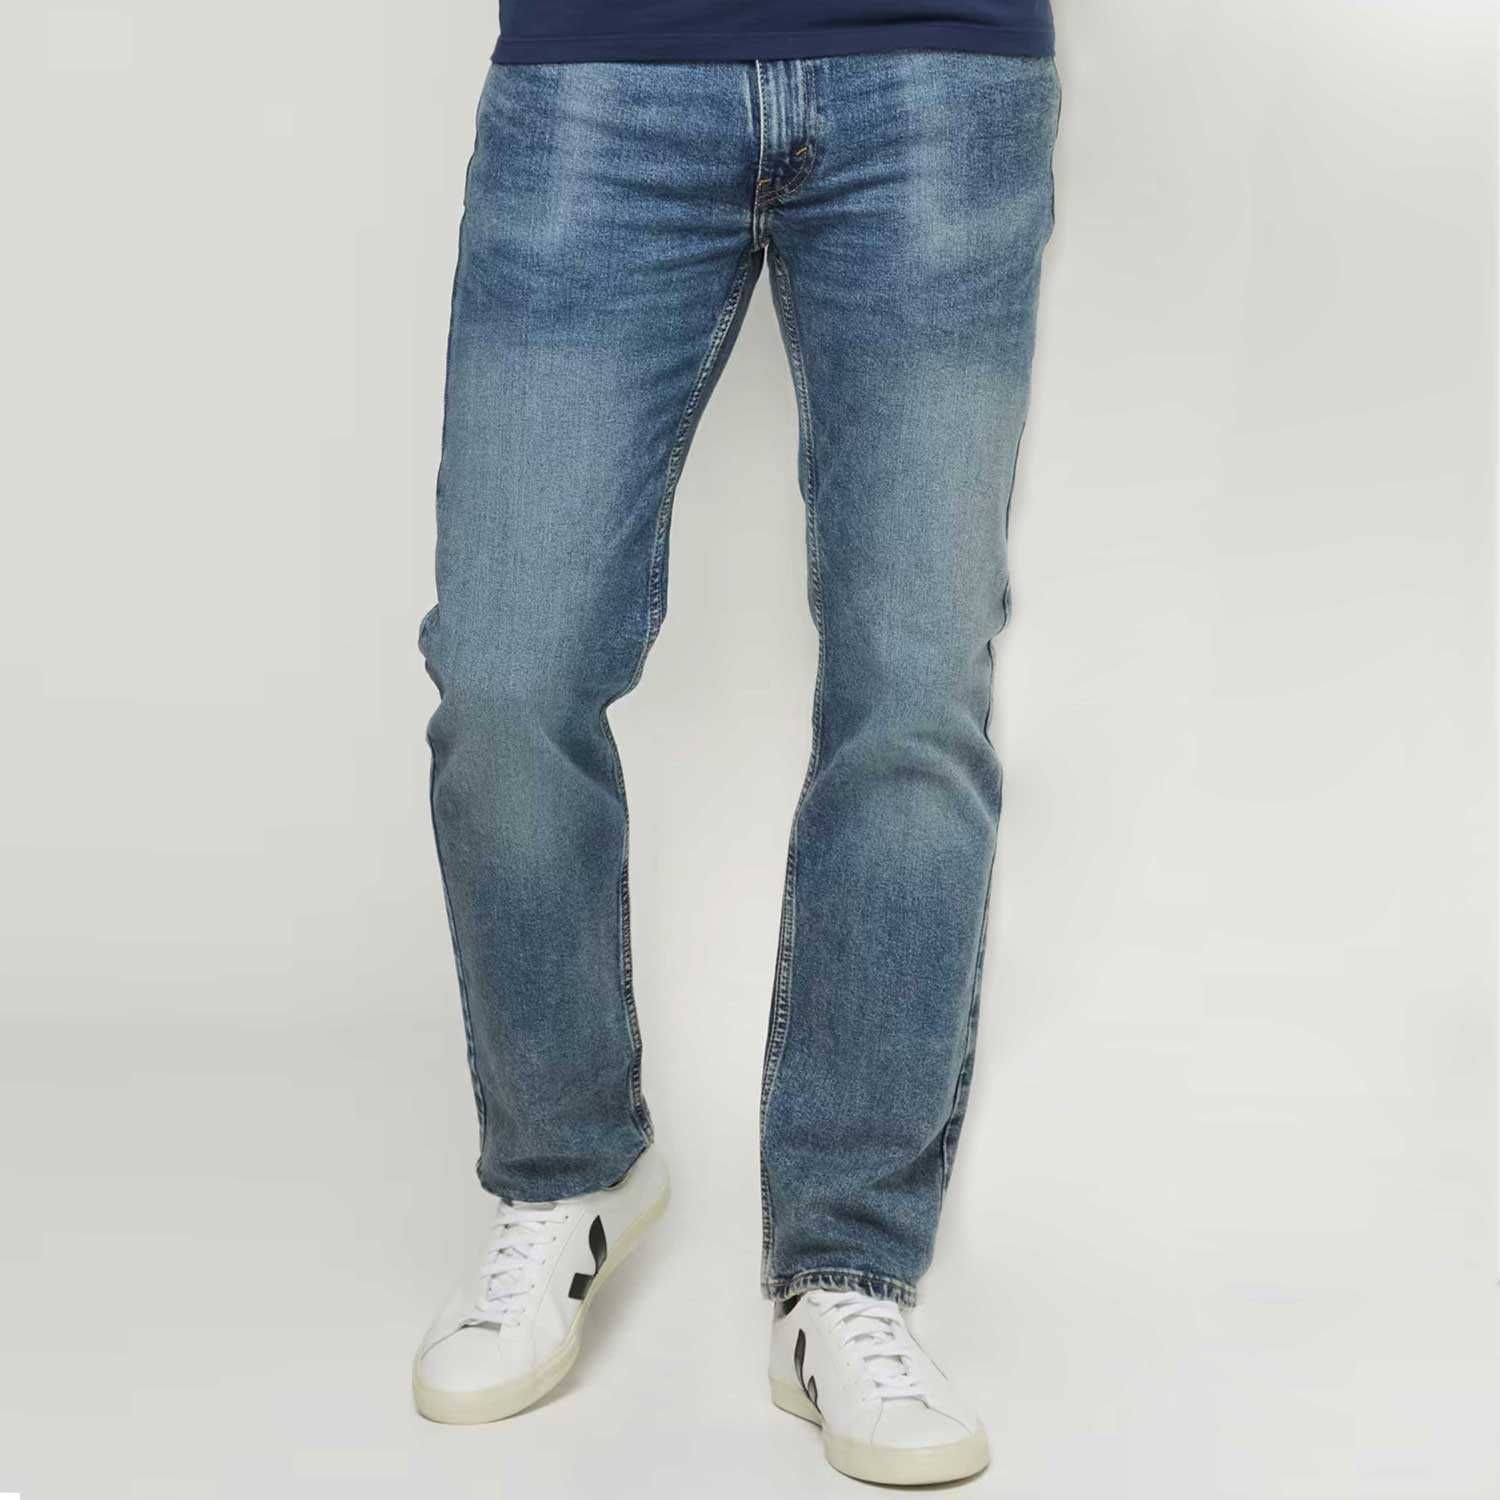 Новые мужские джинсы Levis 514 прямые классические. Левис из США